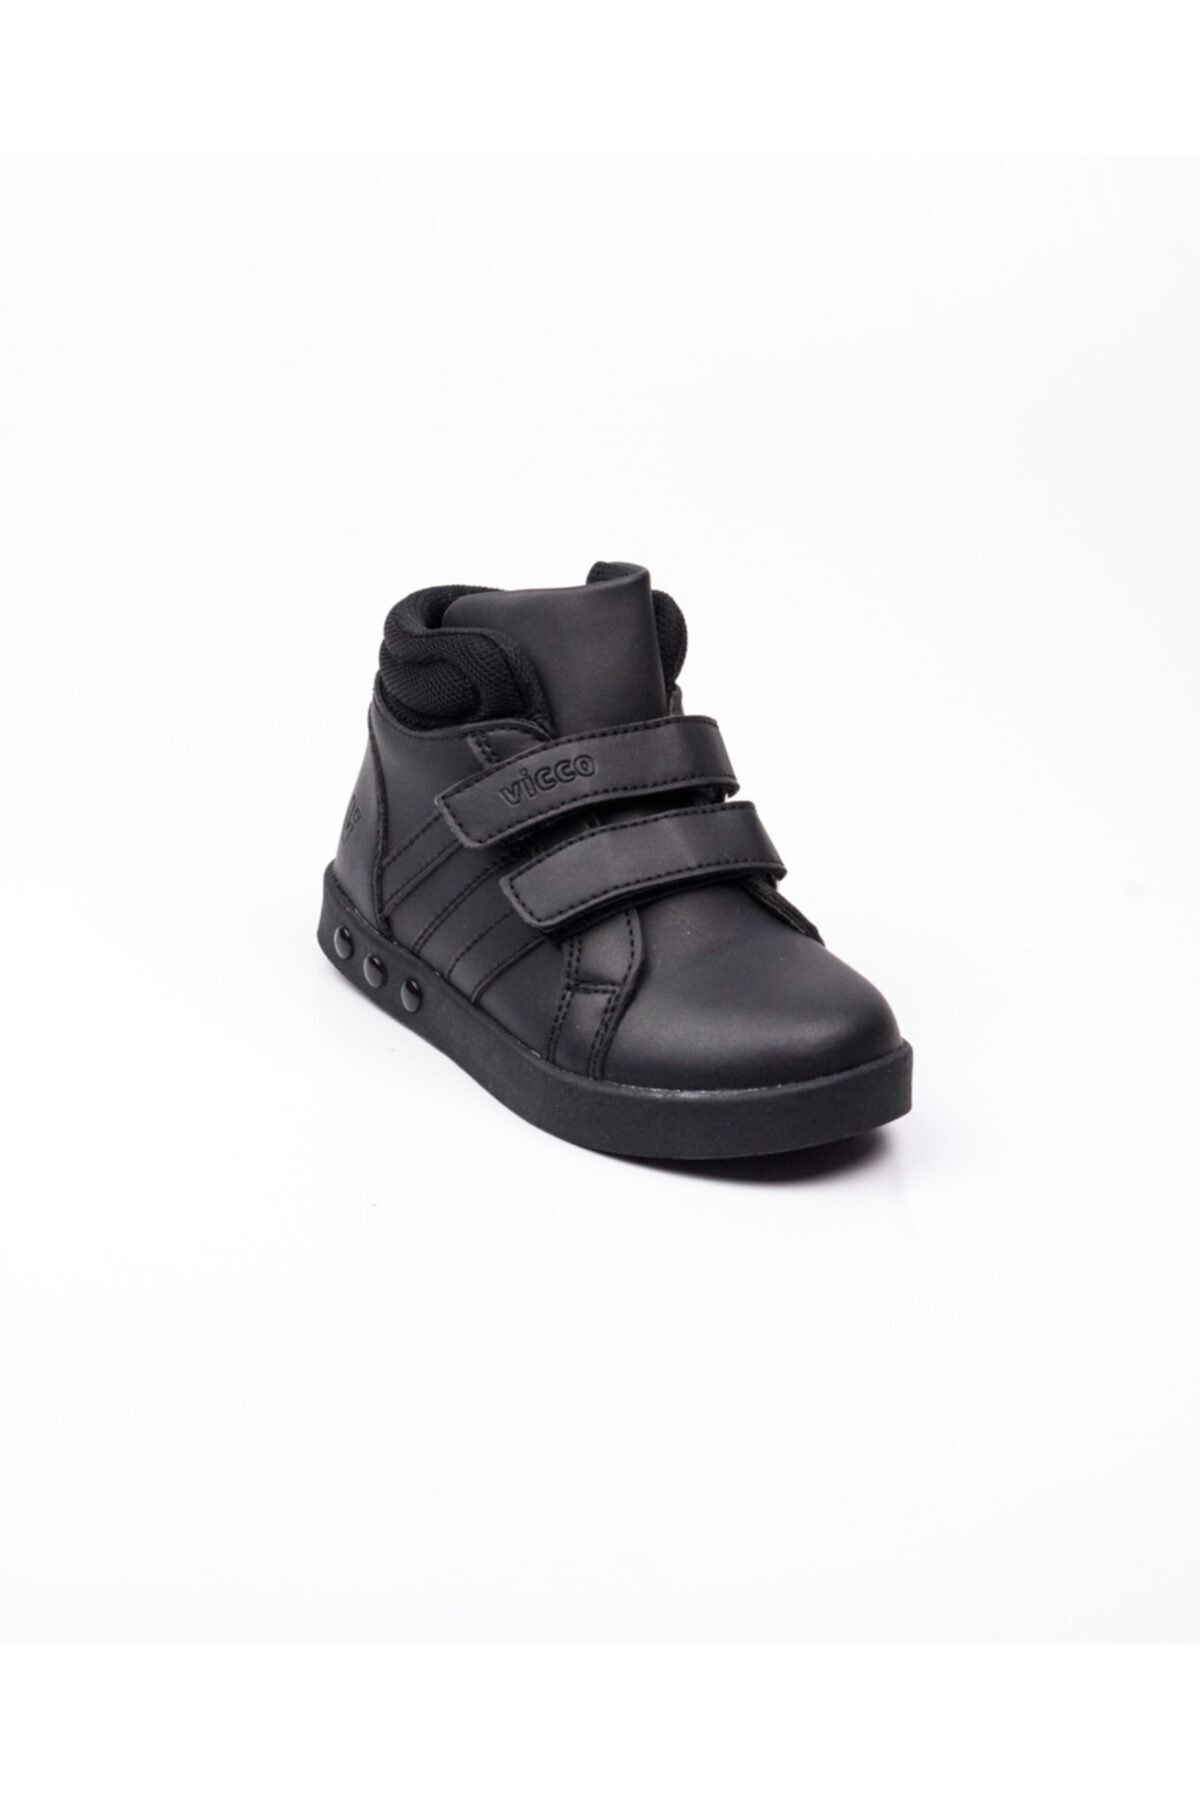 Vicco 313. P19k.104 Siyah Işıklı Çocuk Spor Ayakkabı(26-30) Siyah-28